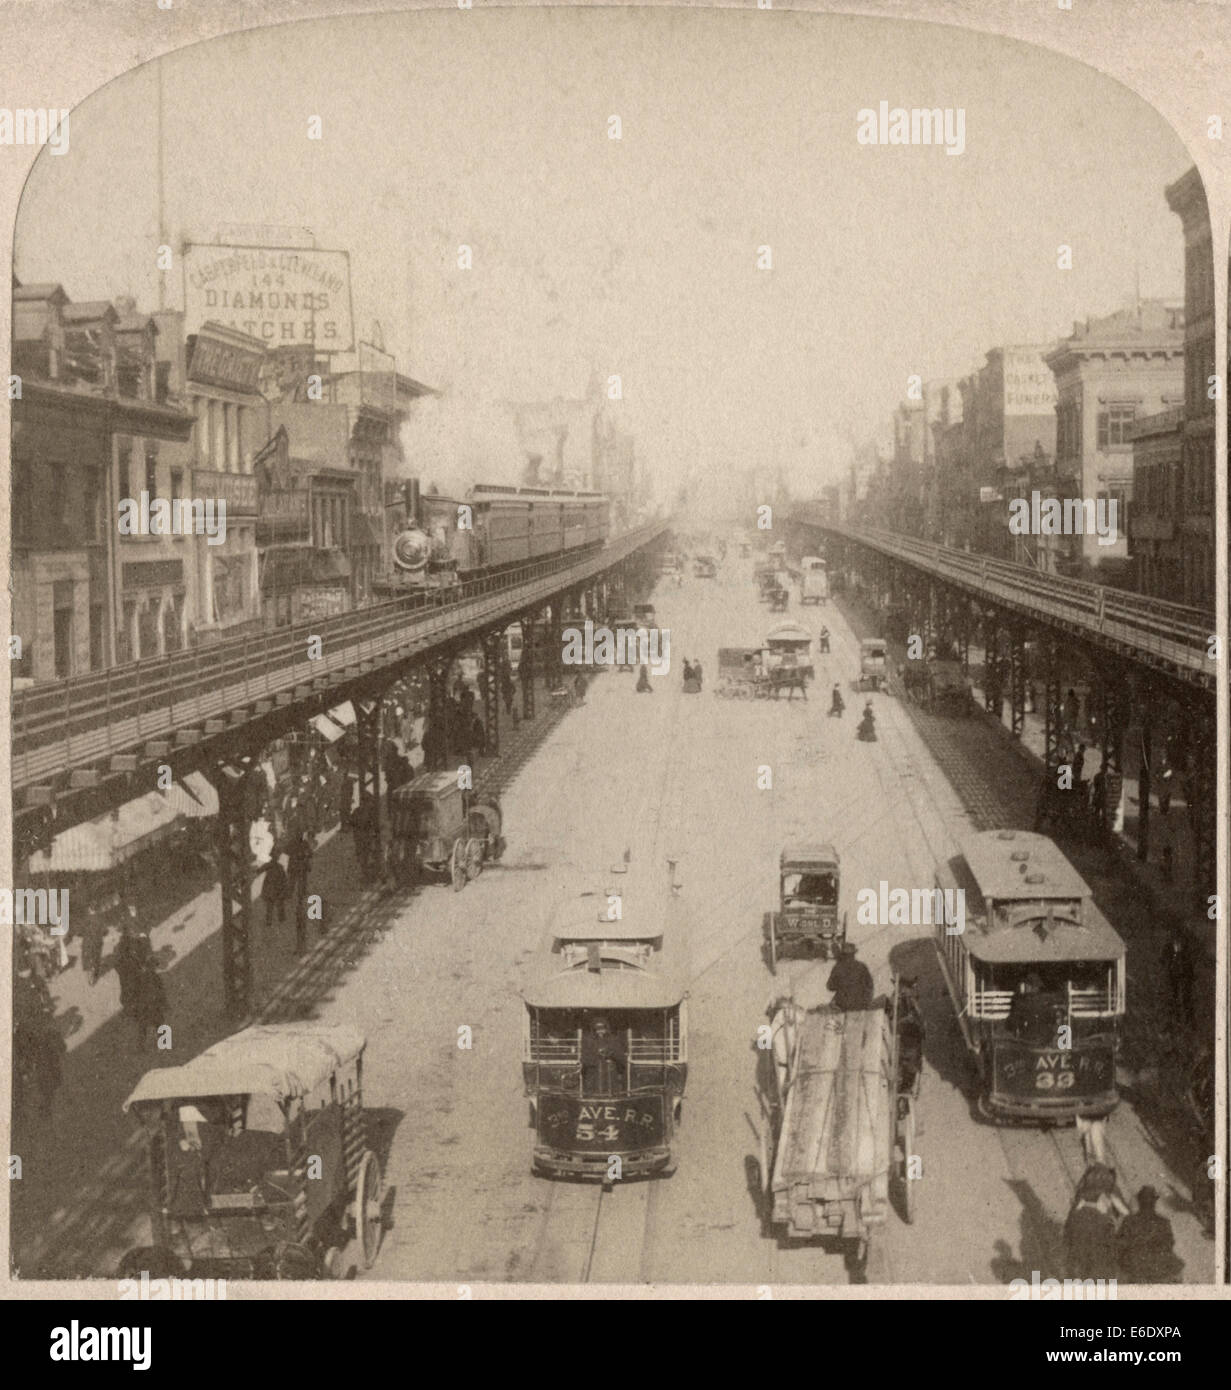 Scena di strada, Bowery, New York City, Stati Uniti d'America, 'lungo la notato Bowery, New York STATI UNITI D'AMERICA", una immagine della scheda Stereo, 1896 Foto Stock